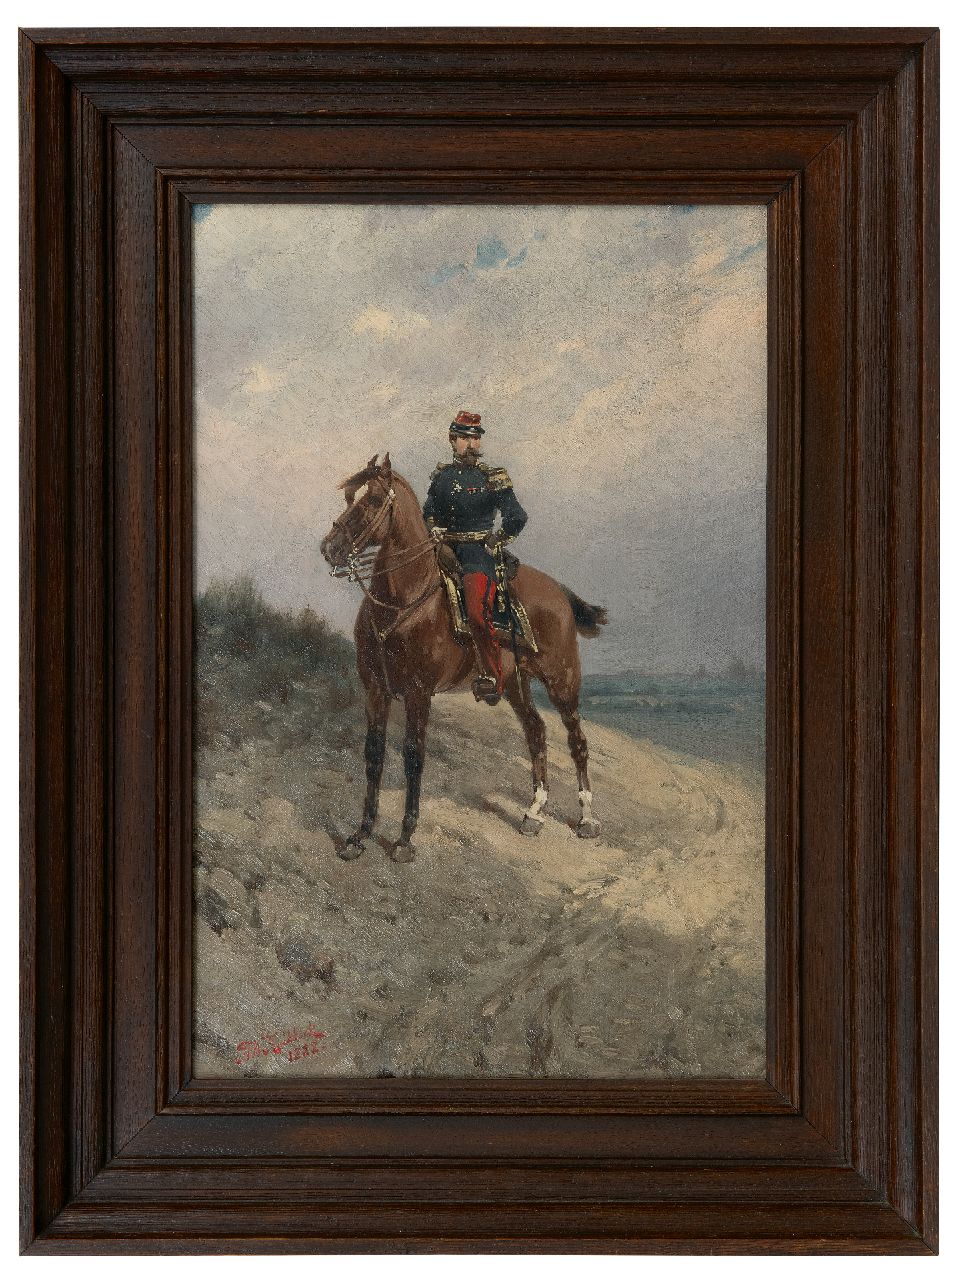 Koekkoek H.W.  | Hermanus Willem Koekkoek | Schilderijen te koop aangeboden | Ruiterportret van een Franse infanterie-officier, olieverf op doek 45,5 x 30,6 cm, gesigneerd linksonder en gedateerd 1888